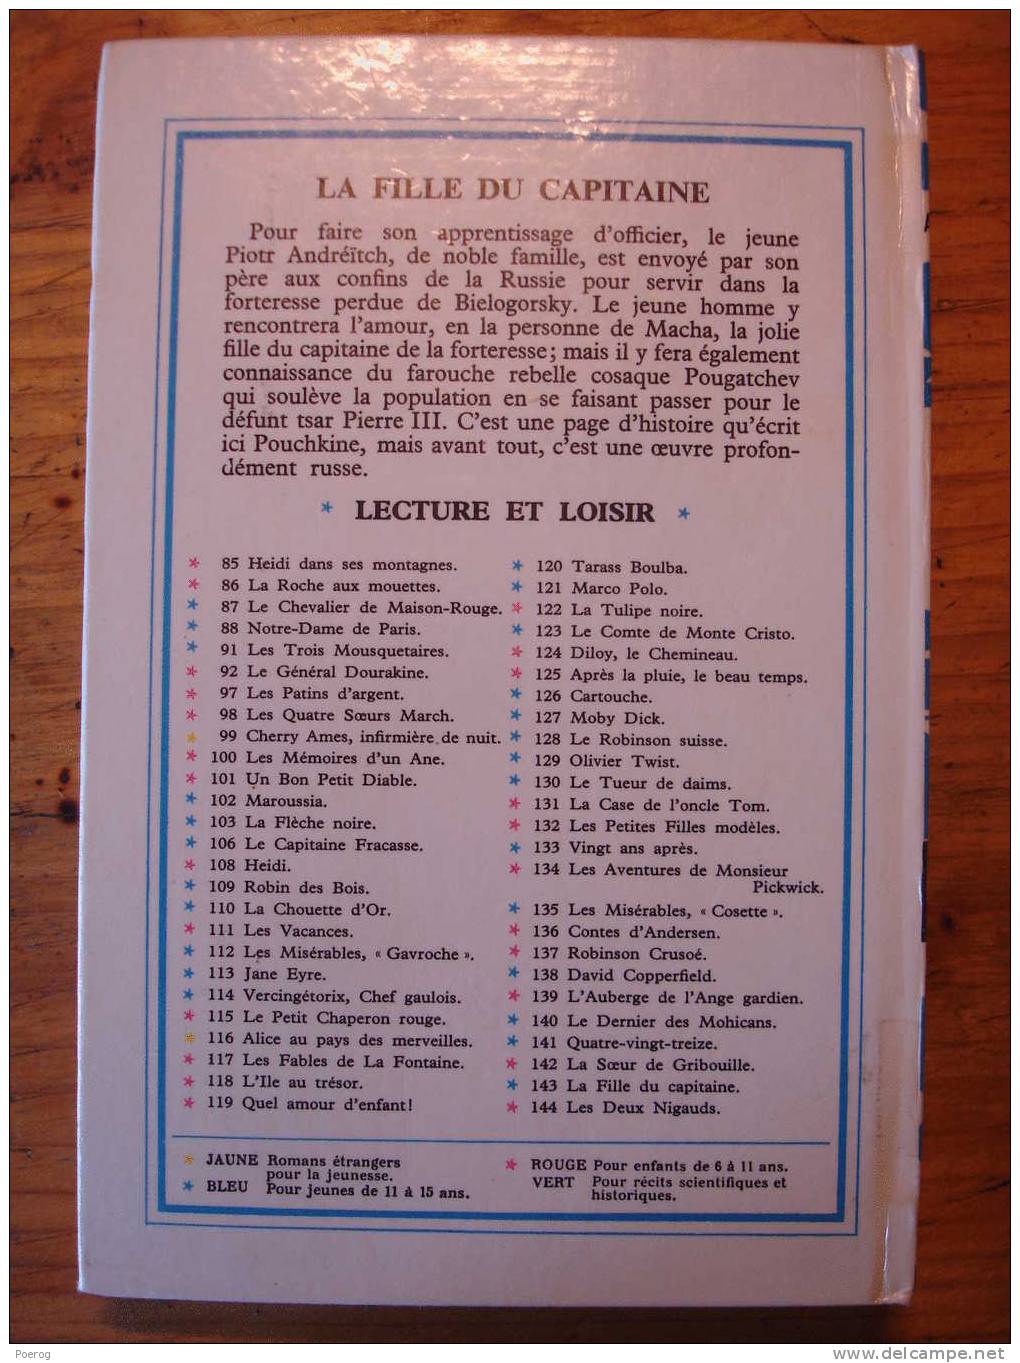 ALEXANDRE POUCHKINE - LA FILLE DU CAPITAINE - LECTURE ET LOISIR N°143 - LIBRAIRIE CHARPENTIER PARIS - 1969 - J. GILLY - Collection Lectures Und Loisirs